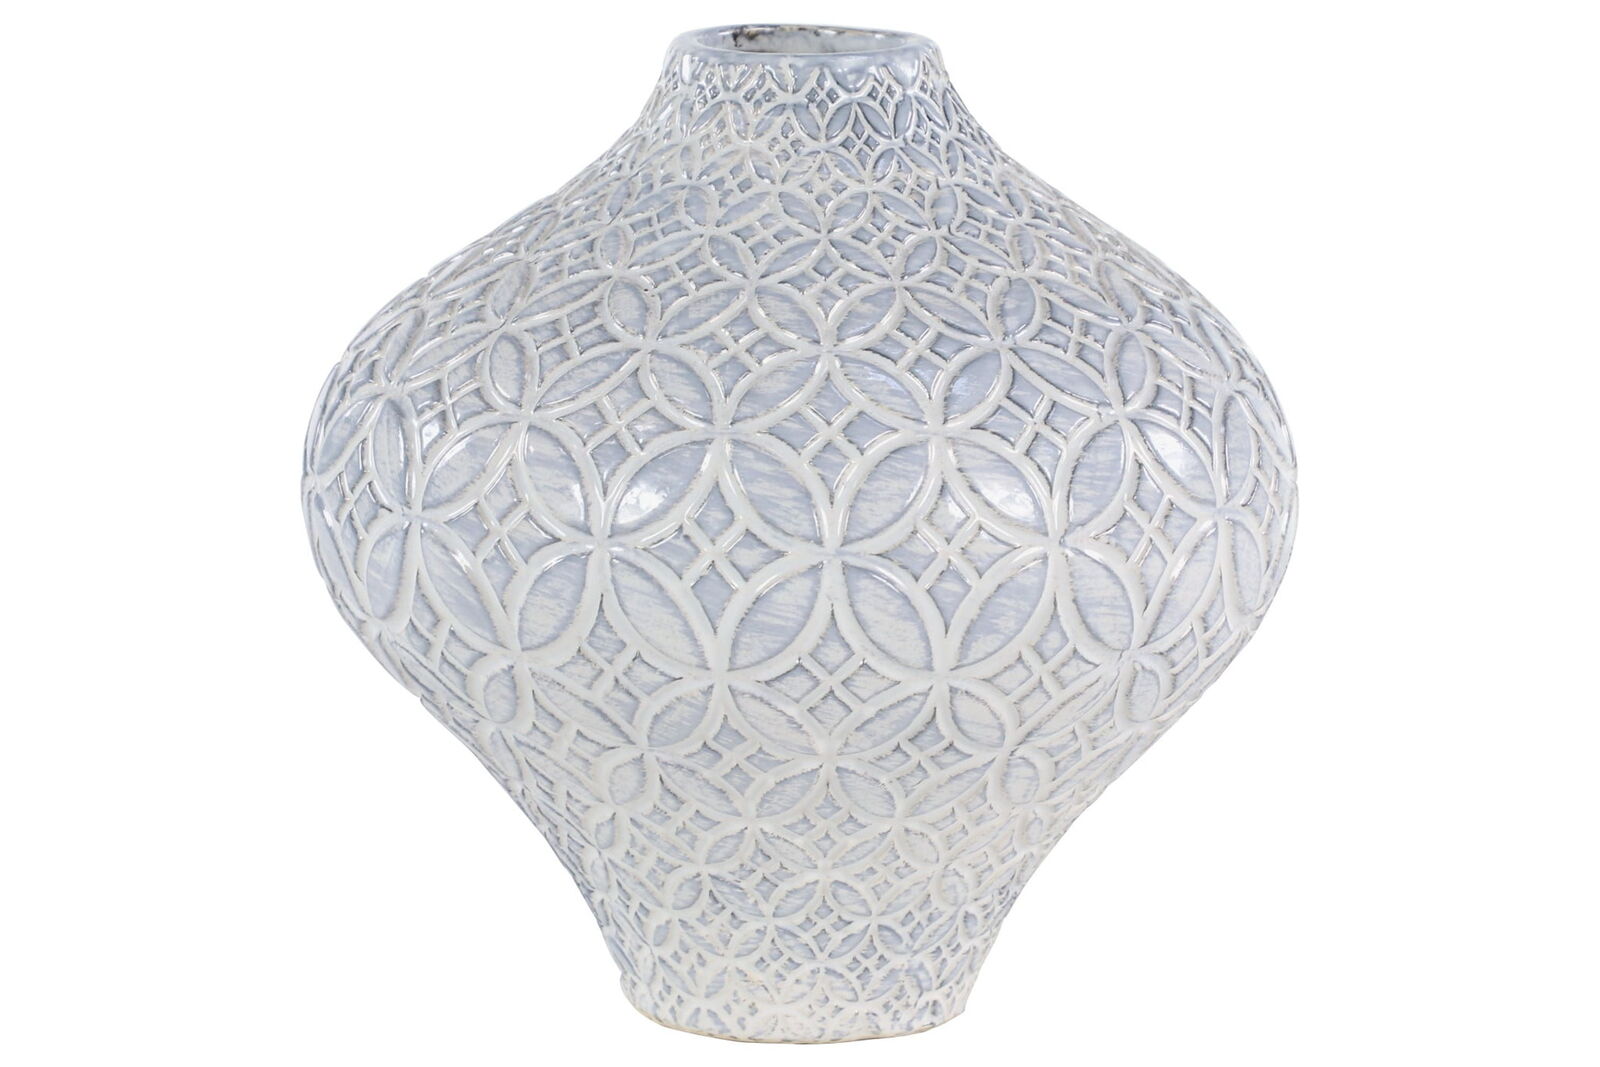 10 inch floral white porcelain vase, high-end and elegant